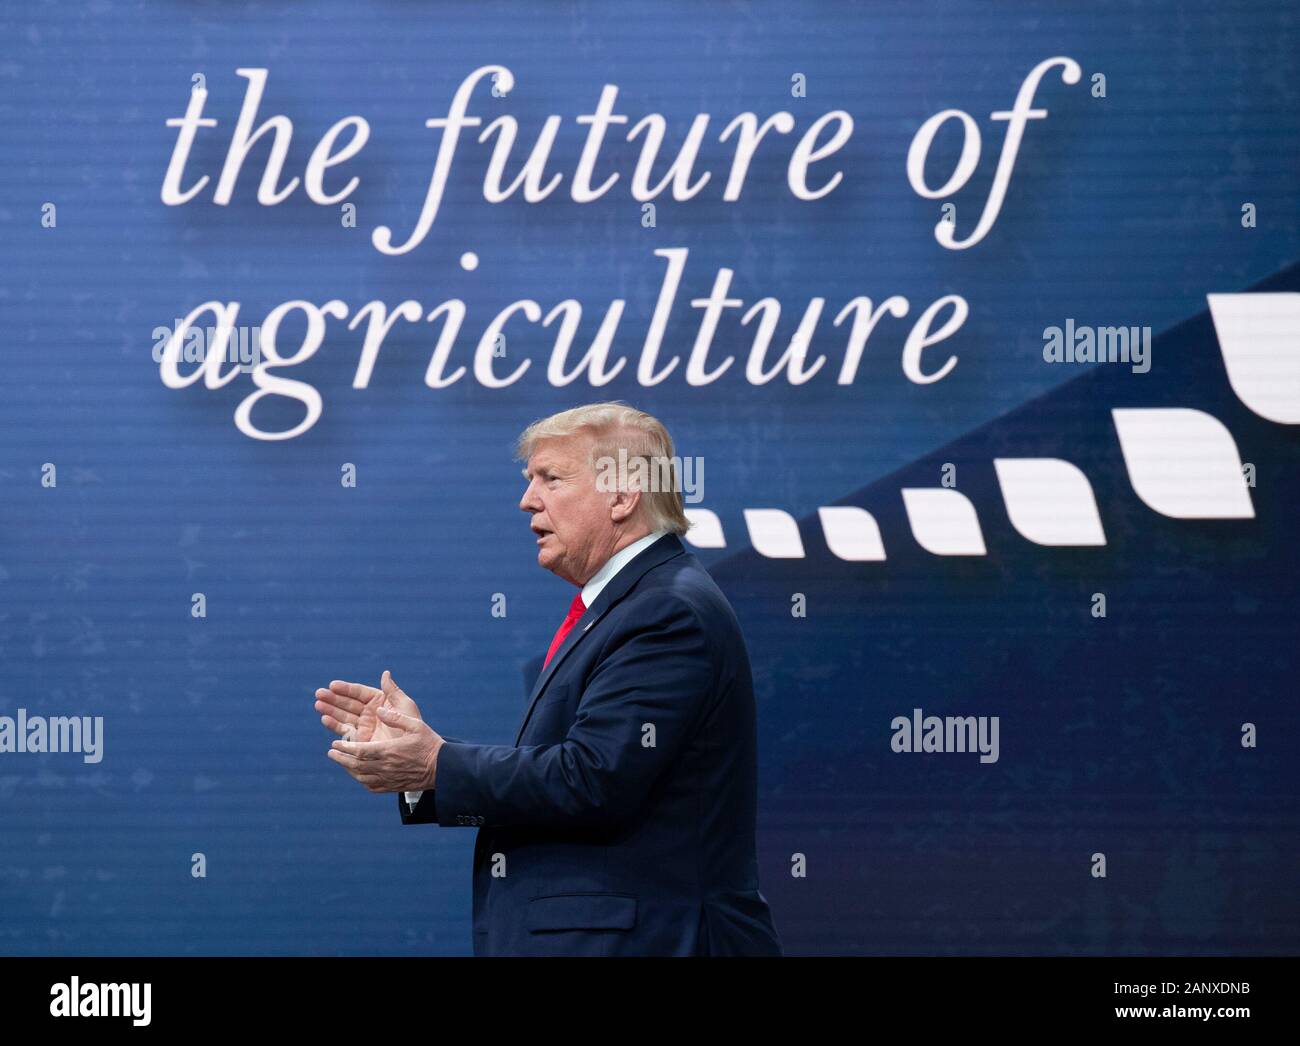 Le président américain Donald J. Trump arrive sur scène avant de s'adresser à 5 000 participants à la convention annuelle de la Fédération américaine du Bureau agricole à Austin, Texas, États-Unis. Banque D'Images